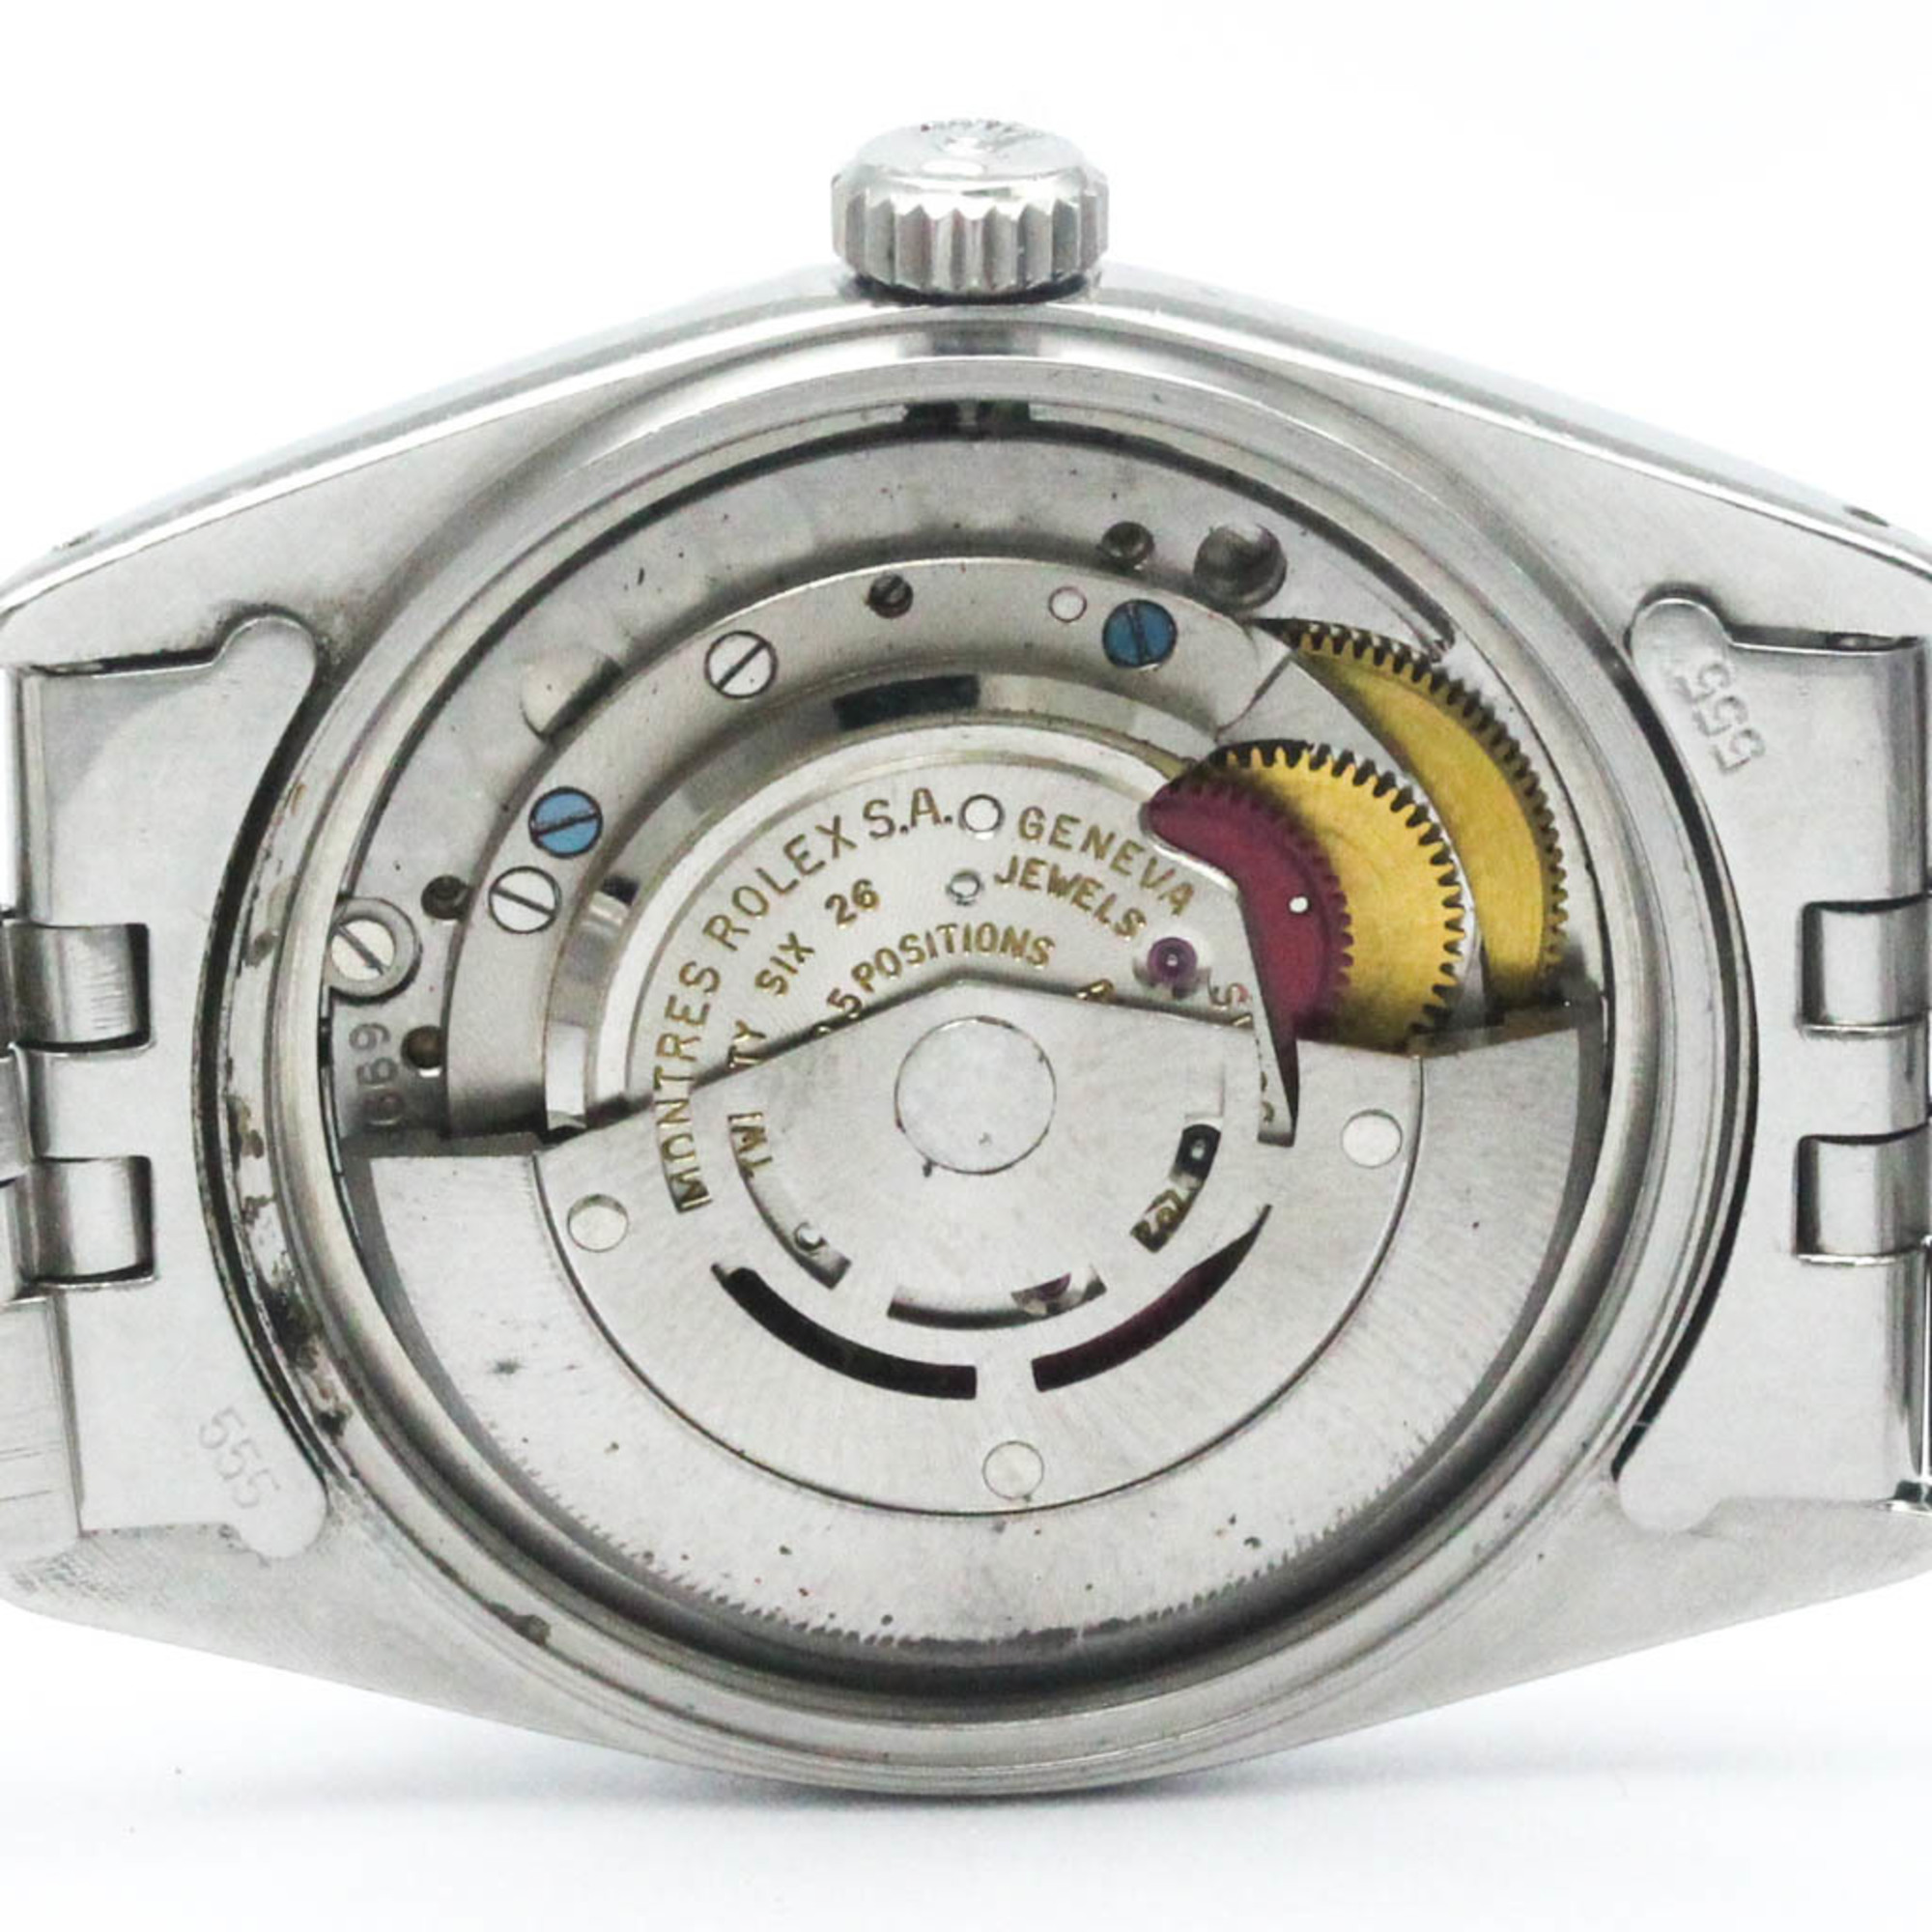 ロレックス (ROLEX) デイトジャスト 1603 ステンレススチール 自動巻き メンズ 時計 【中古】